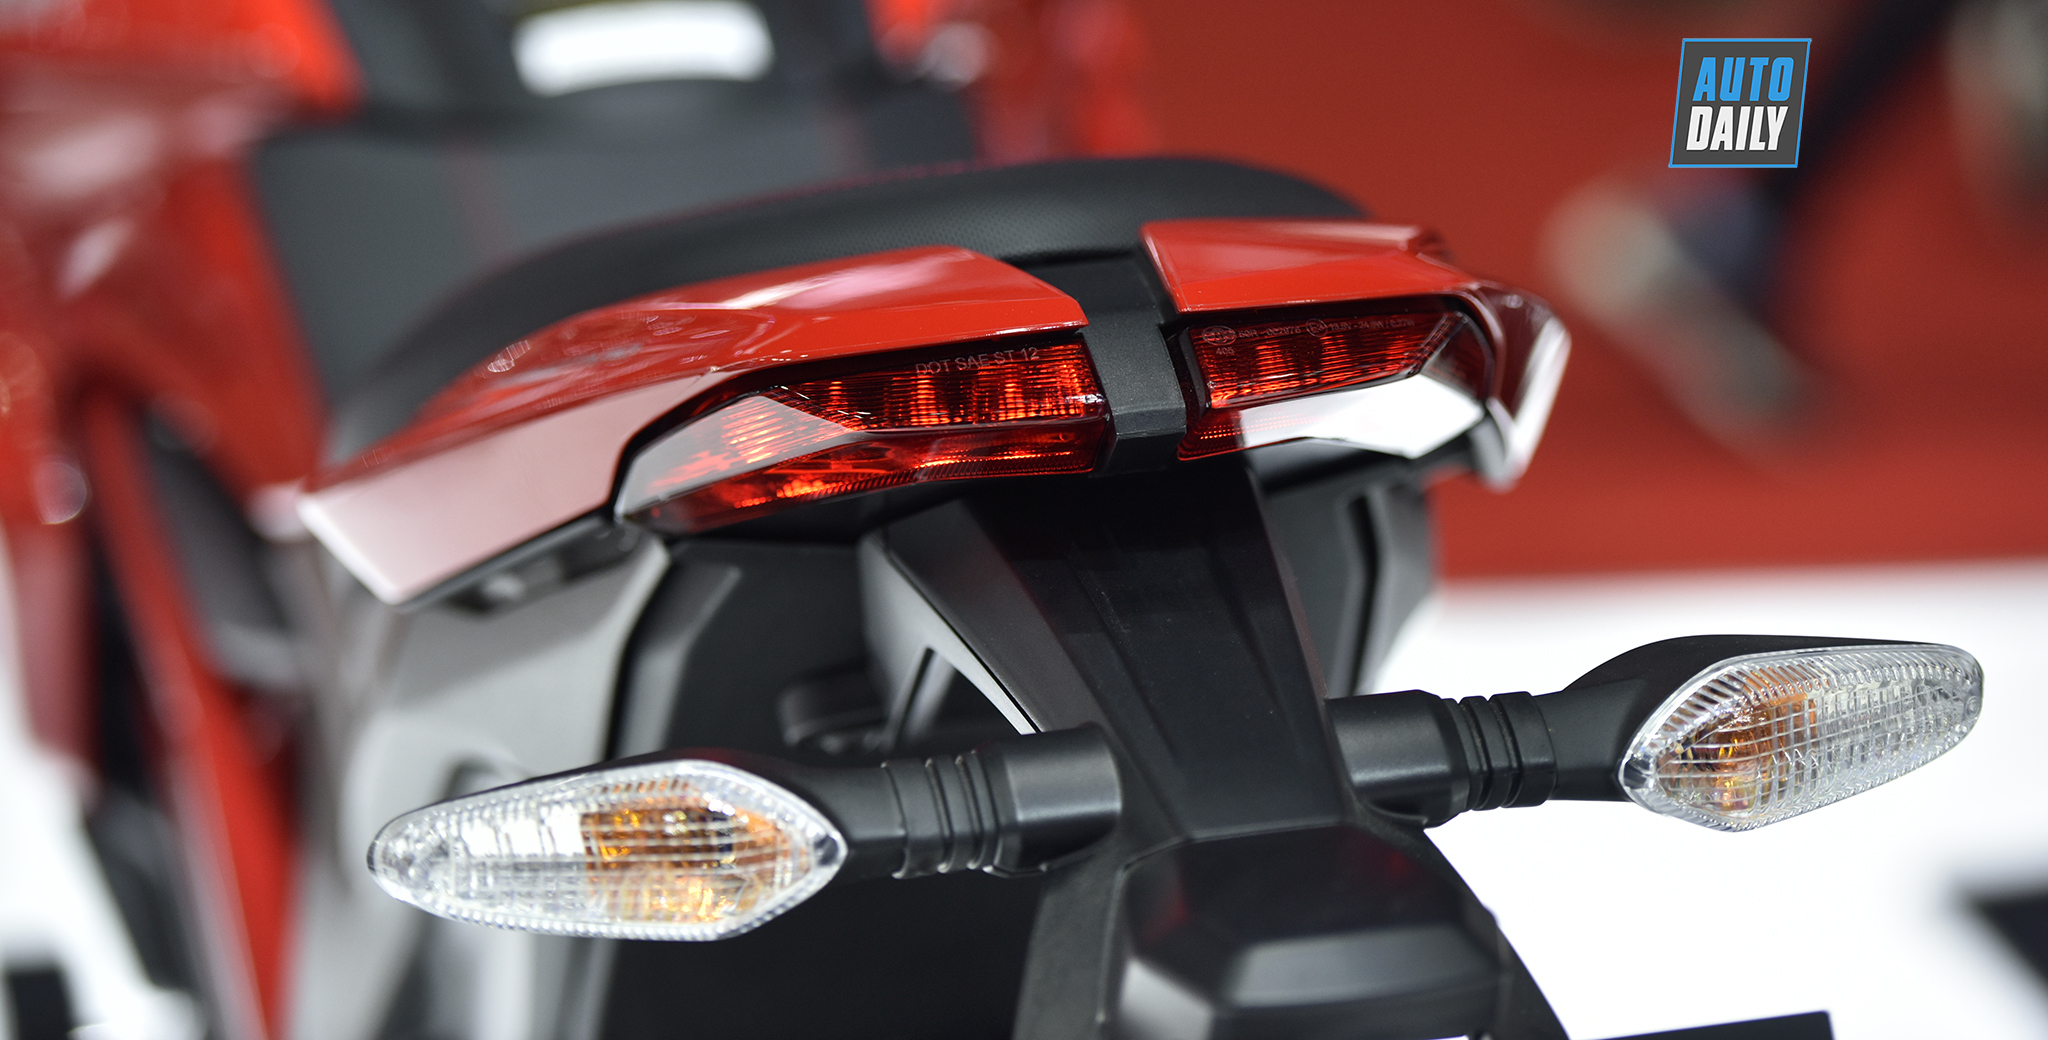 Ducati Hypermotard 939  Dòng xe địa hình hỗn hợp dành cho những người  thích phiêu lưu